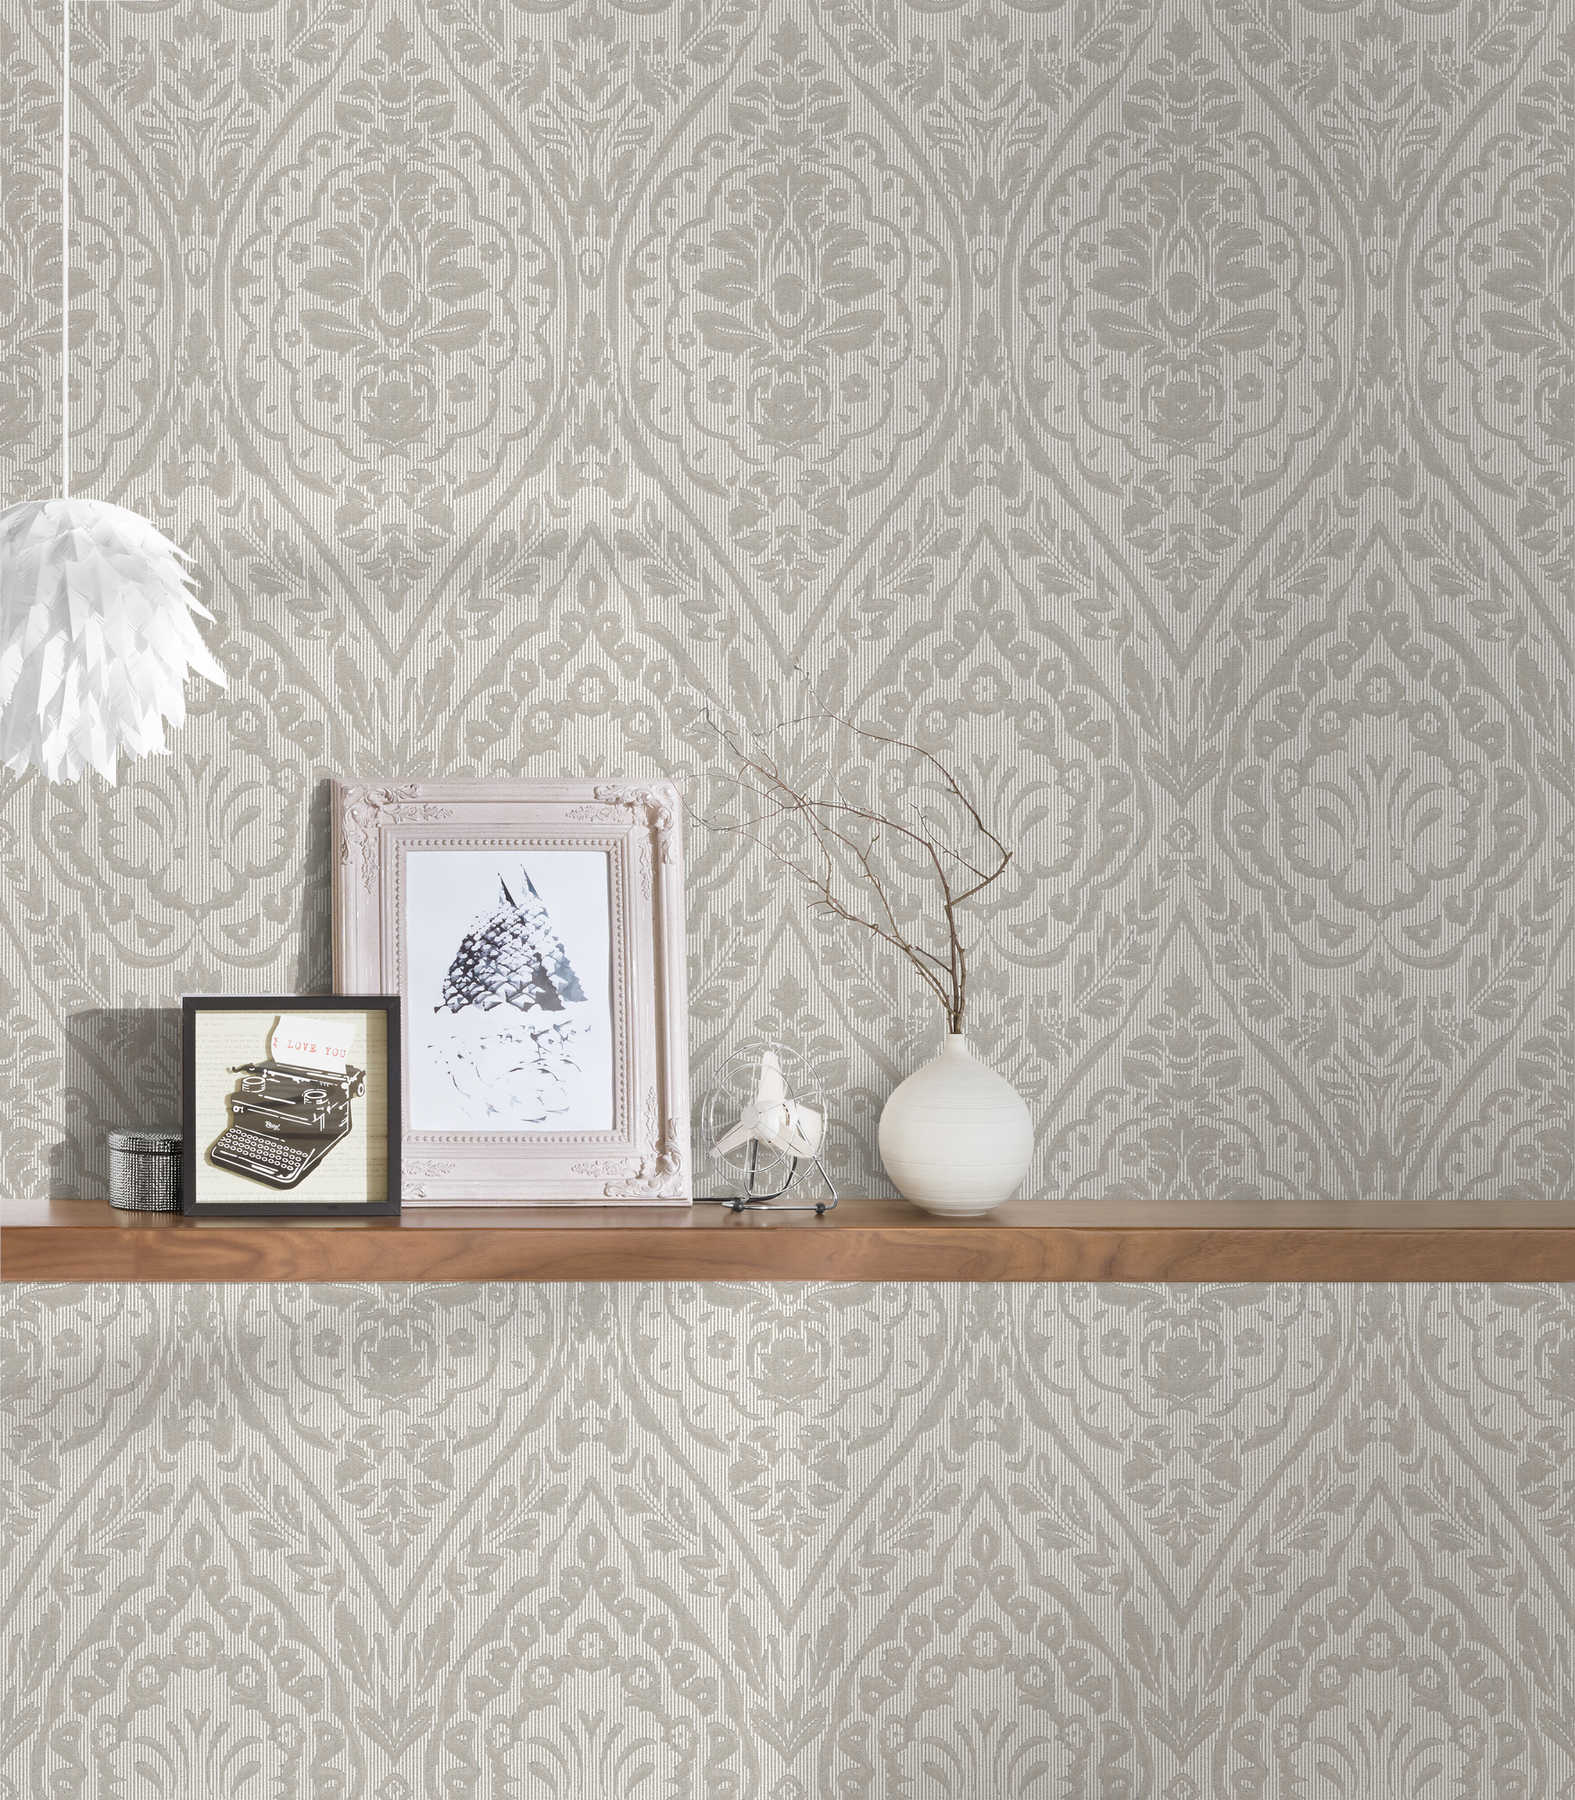             Kolonial Stil Vliestapete florales Muster & Struktureffekt – Creme
        